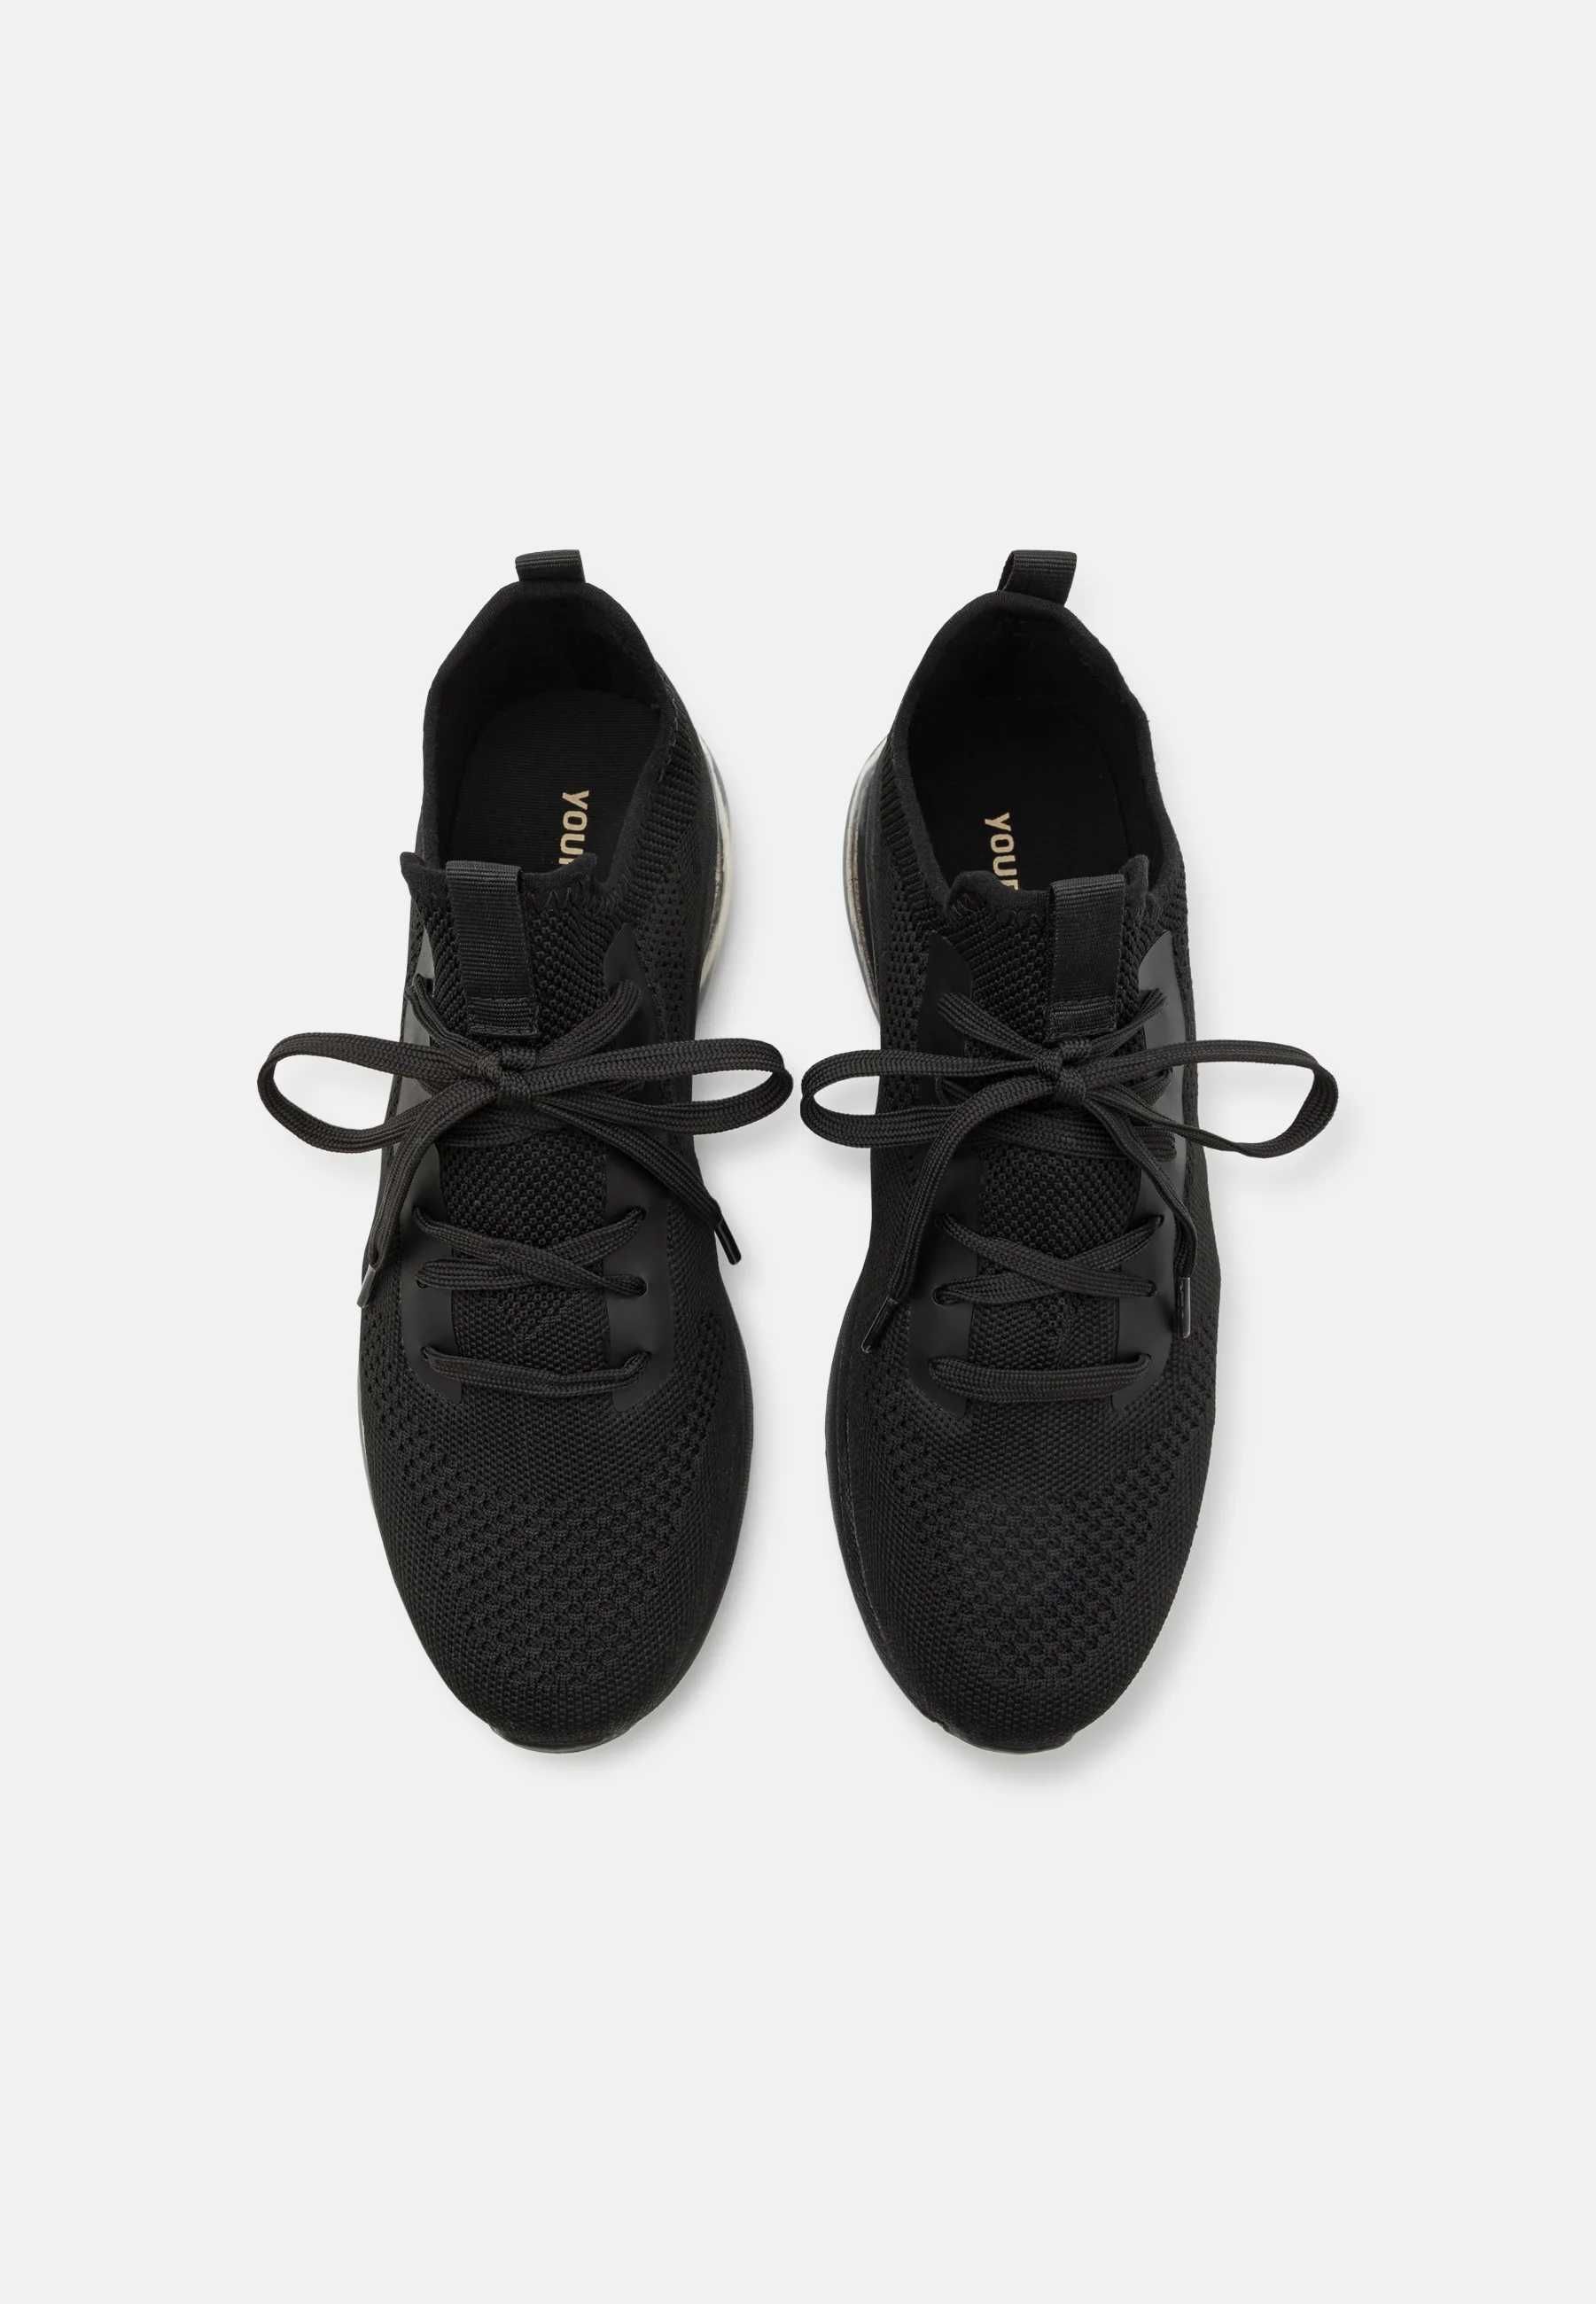 Modne czarne buty sportowe adidasy w stylu Nike Air Max ŚWIETNY WYGLĄD